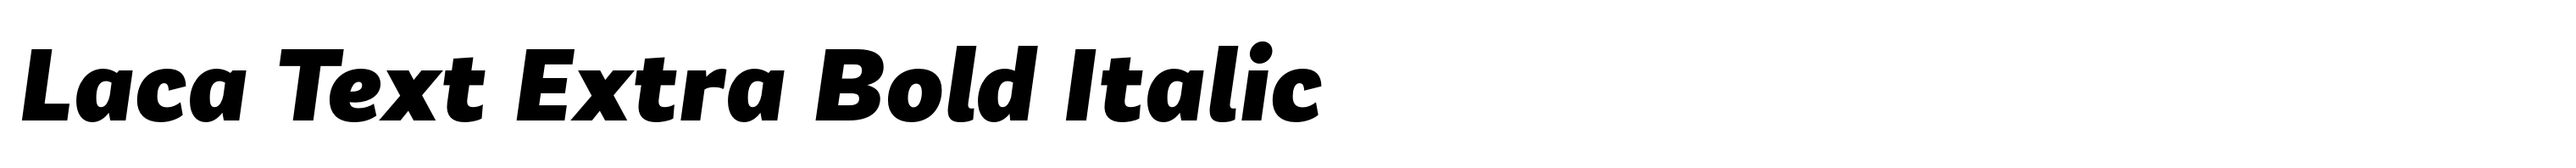 Laca Text Extra Bold Italic